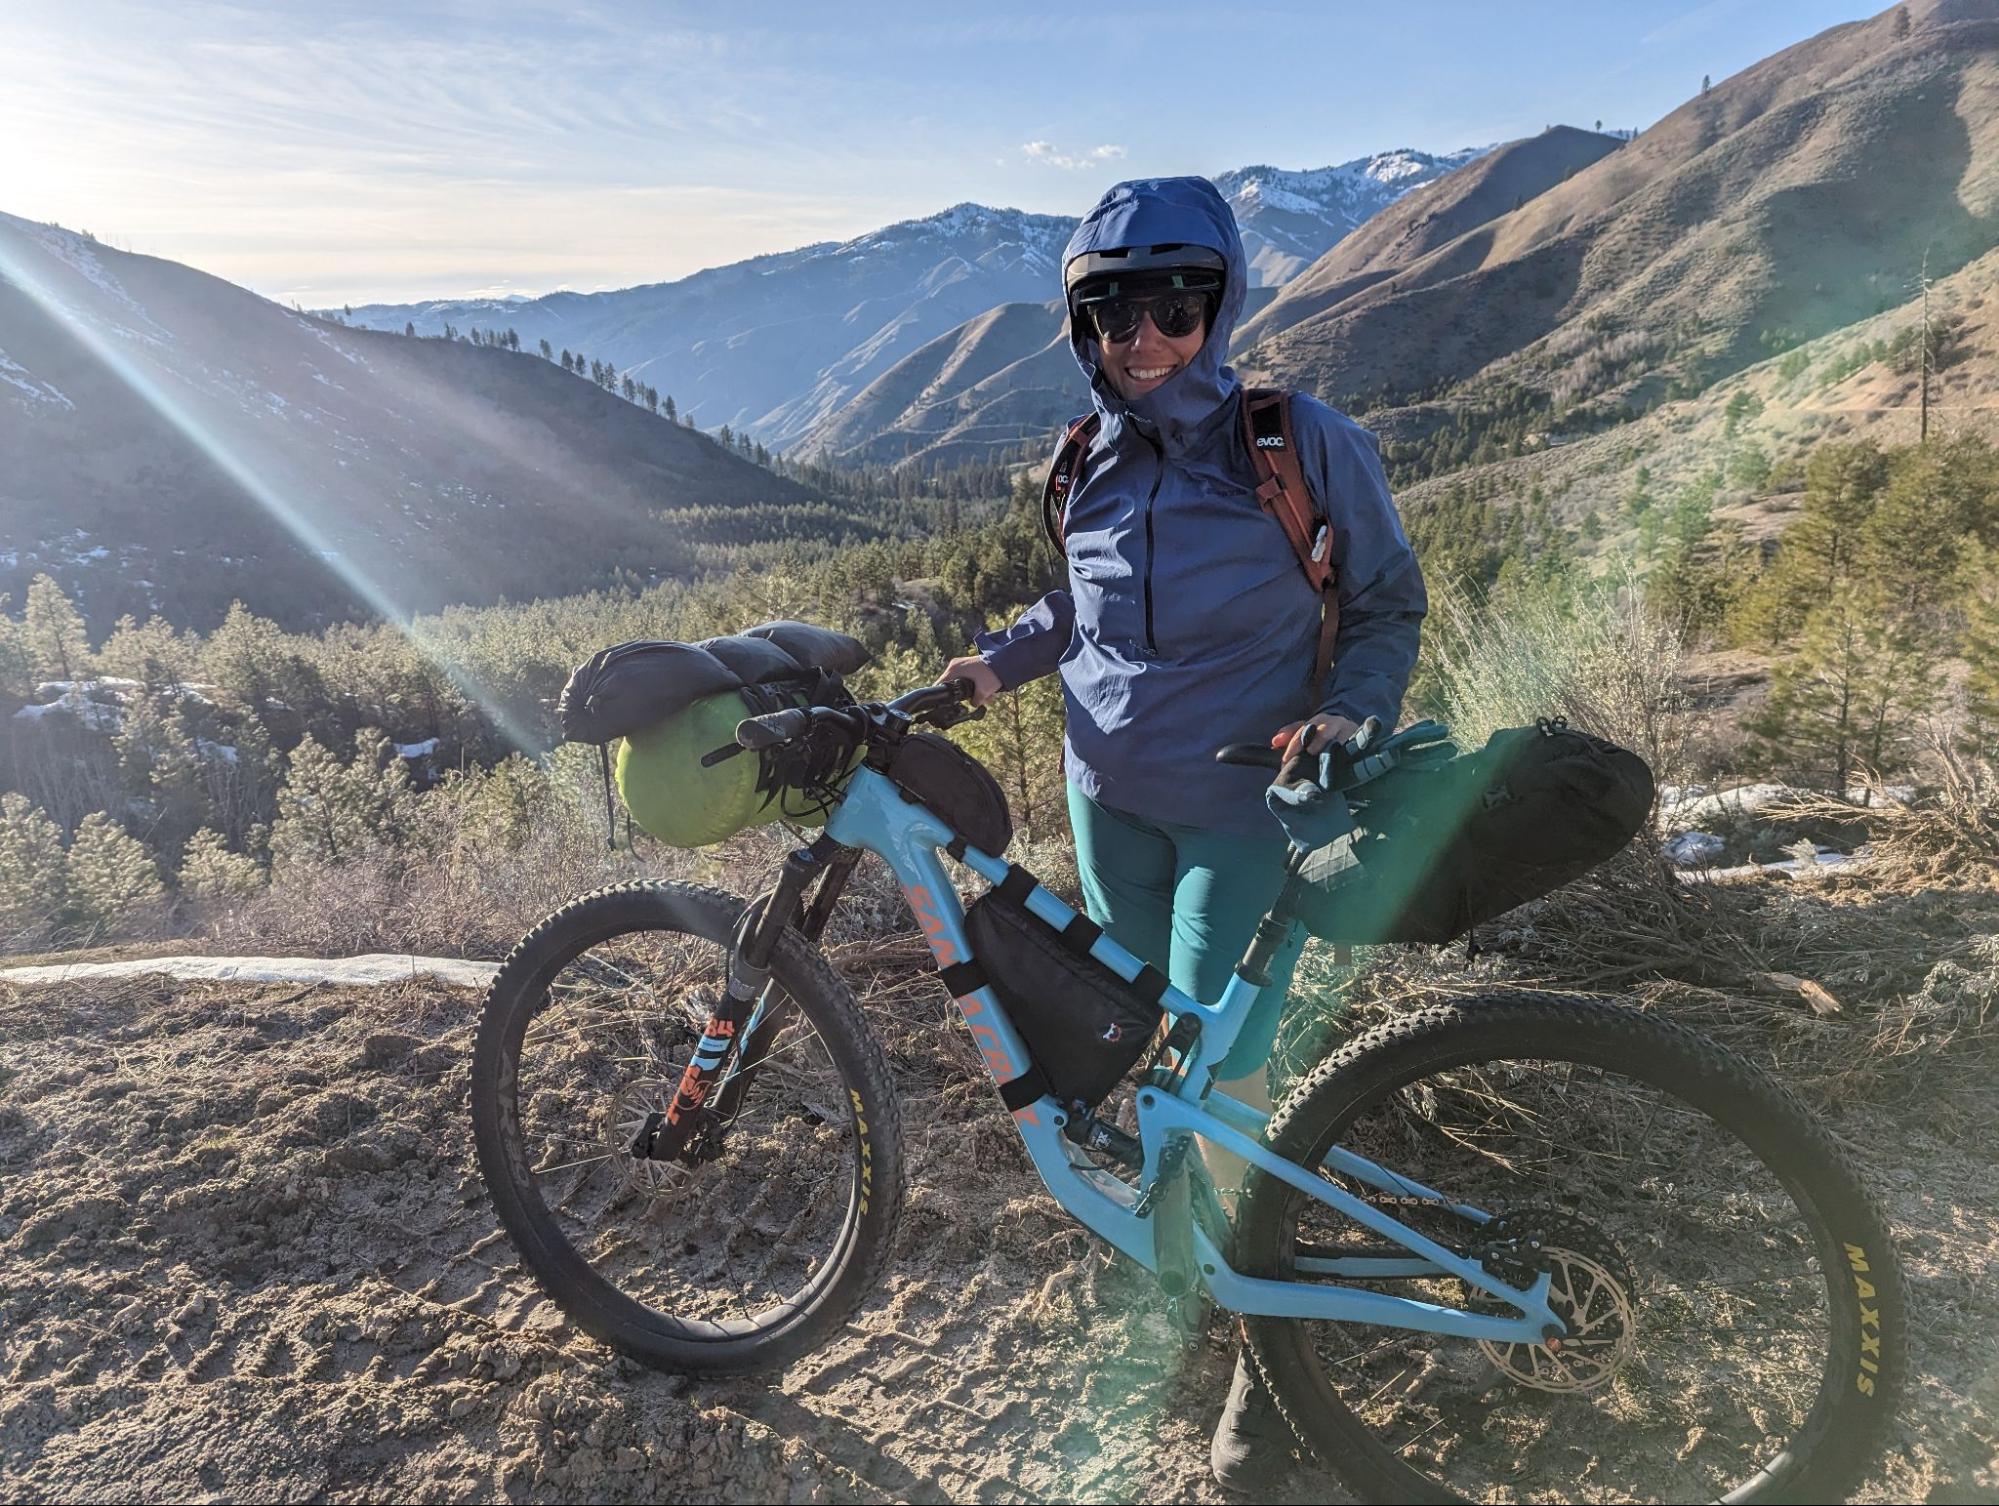 Use a trail bike for bikepacking/adventure biking? Text in